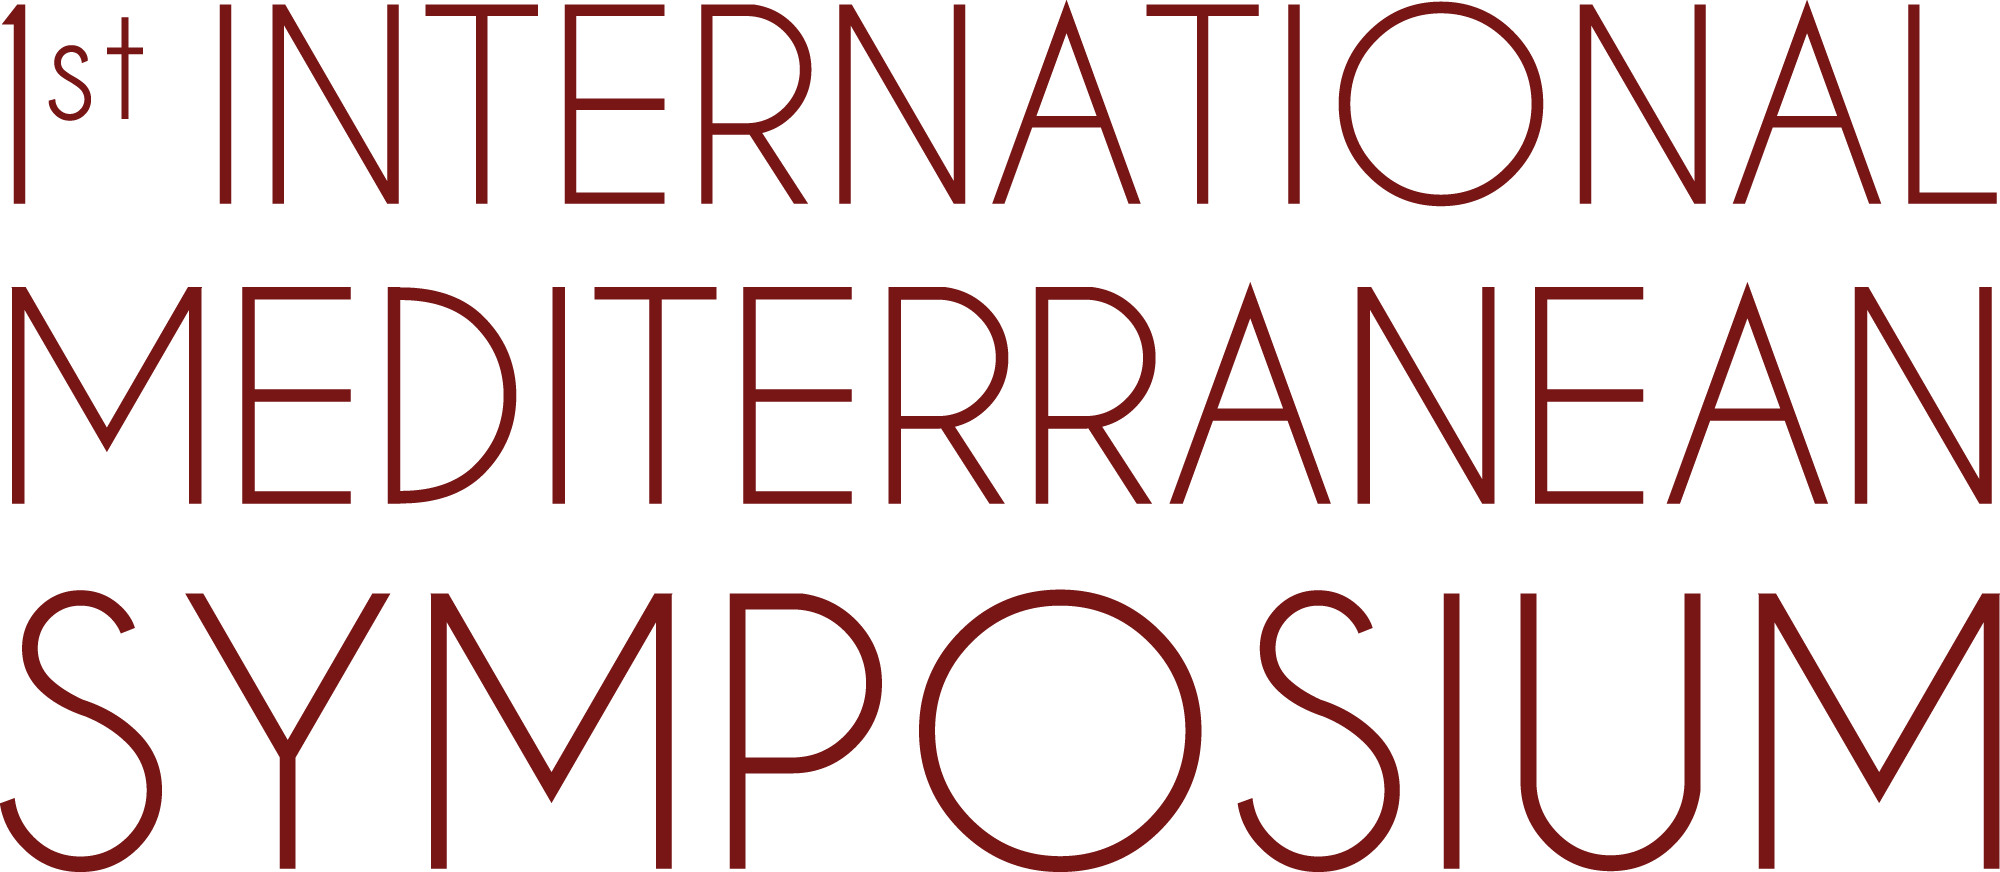 International Mediterranean Symposium